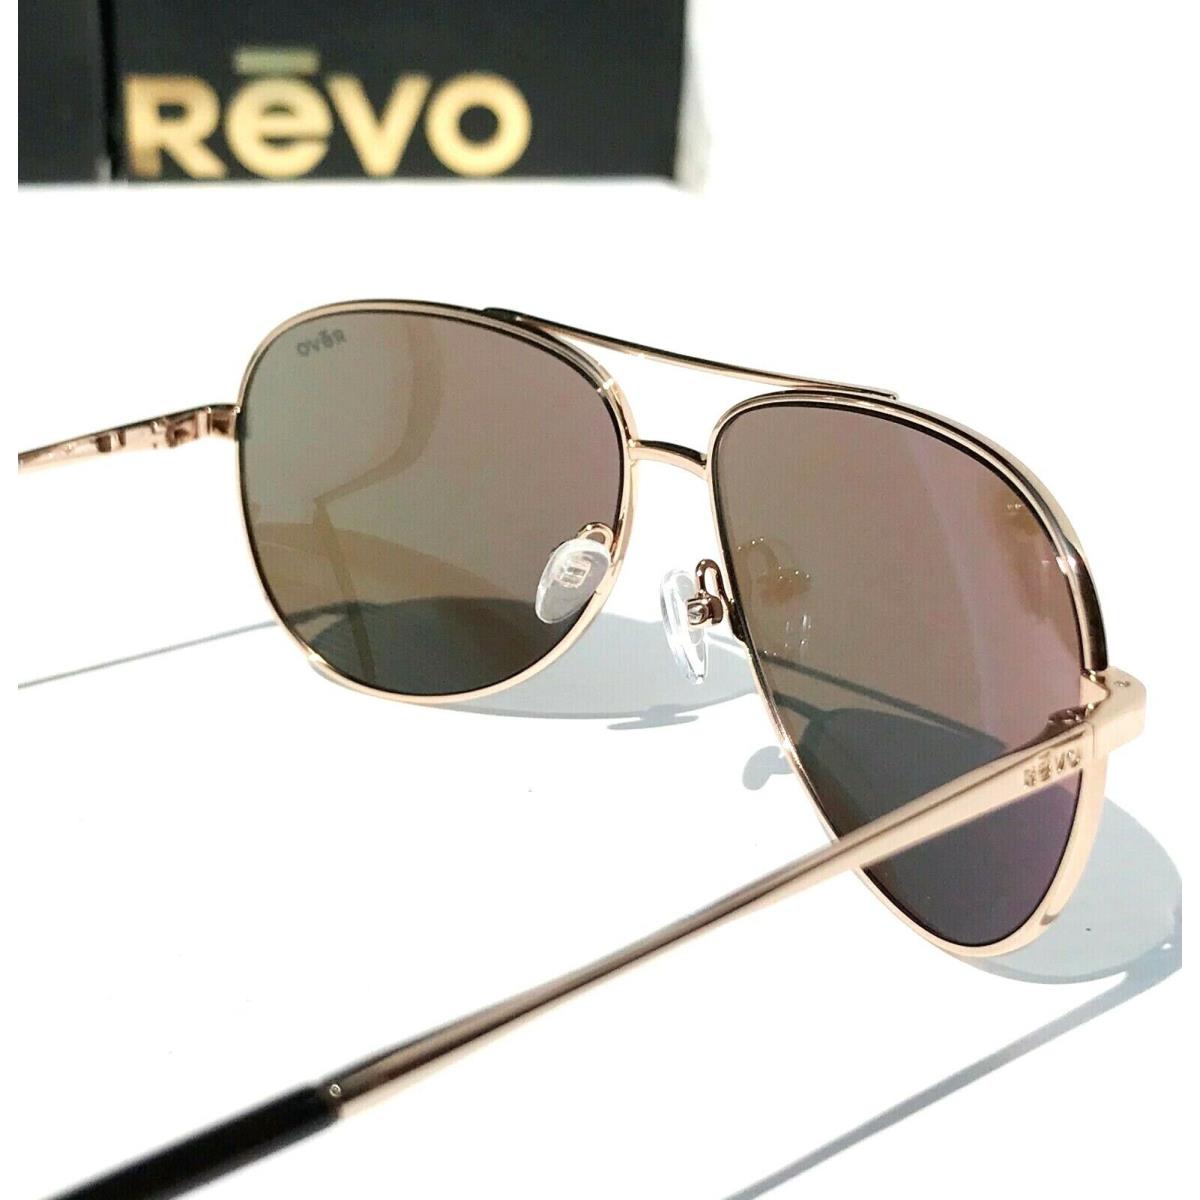 Revo sunglasses  - Gold Frame, Gold Lens